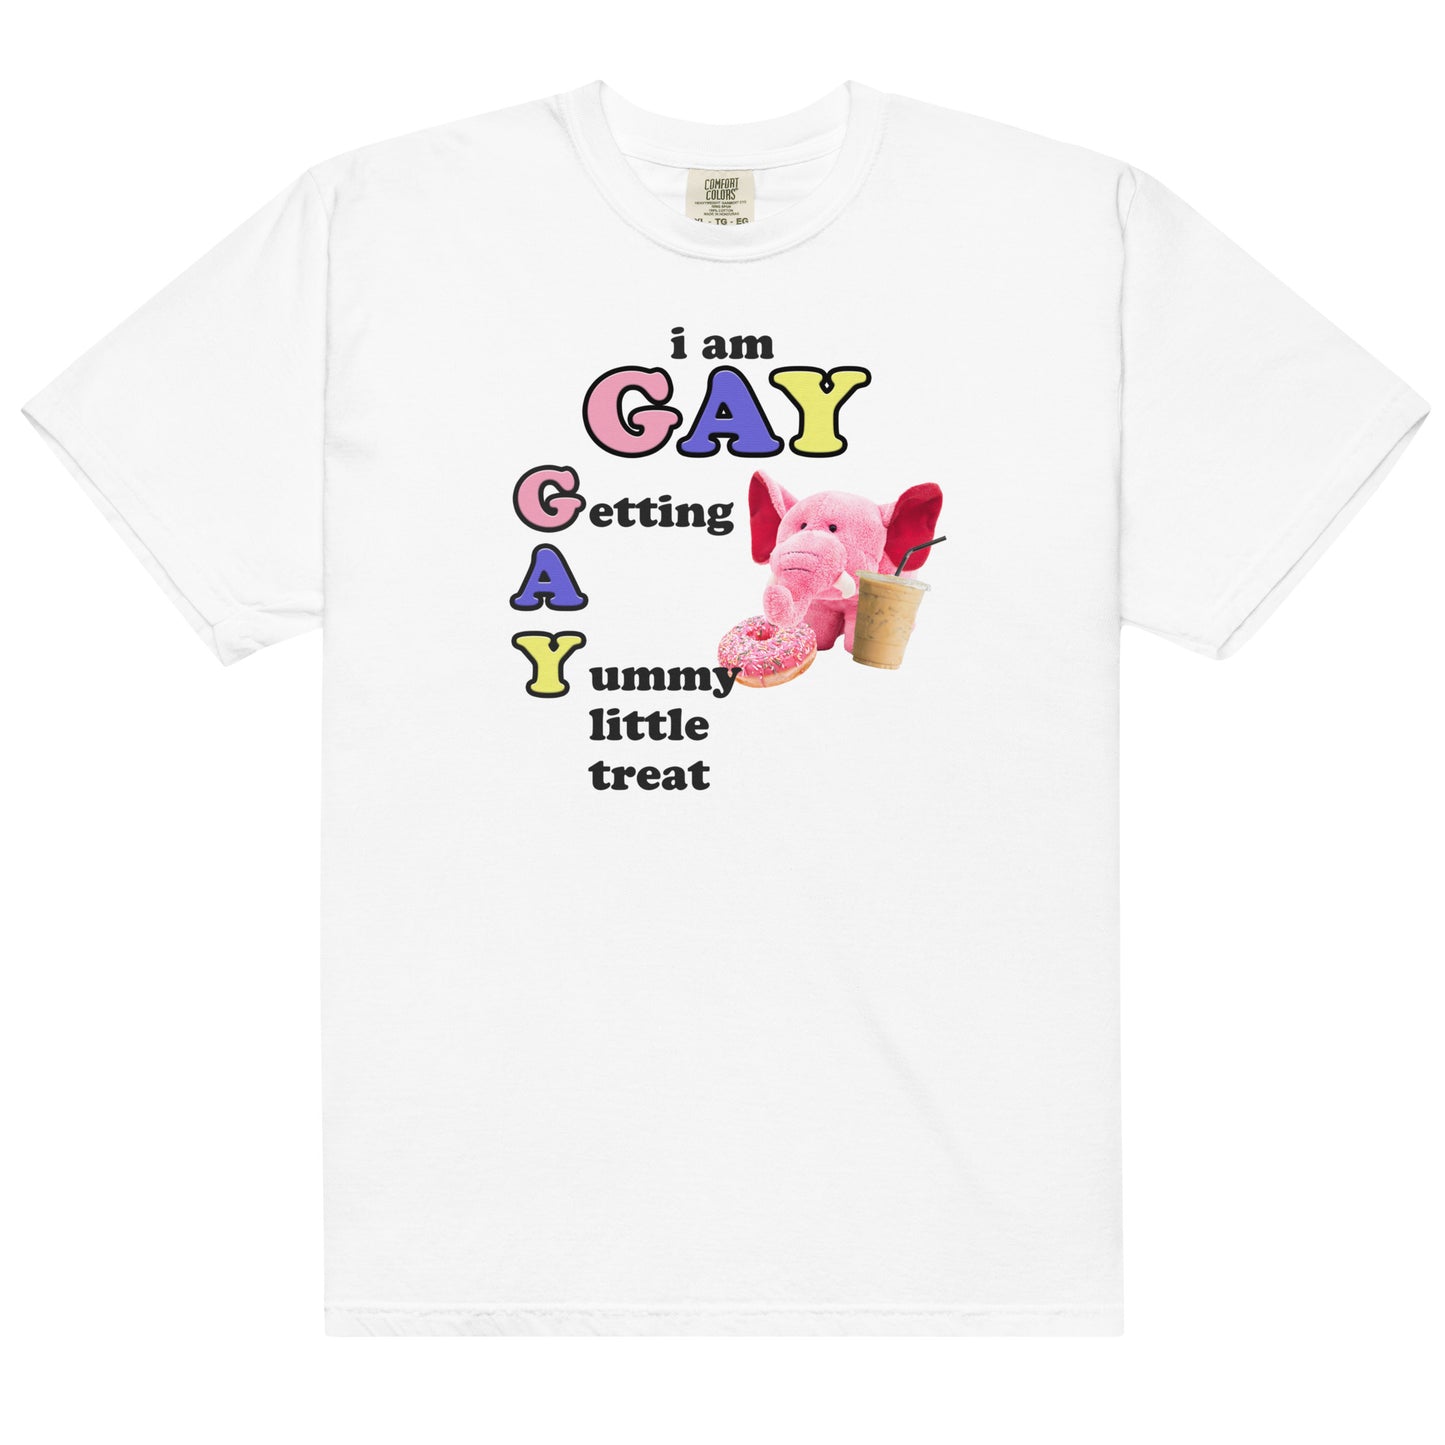 GAY (Getting a Yummy Treat) Unisex t-shirt